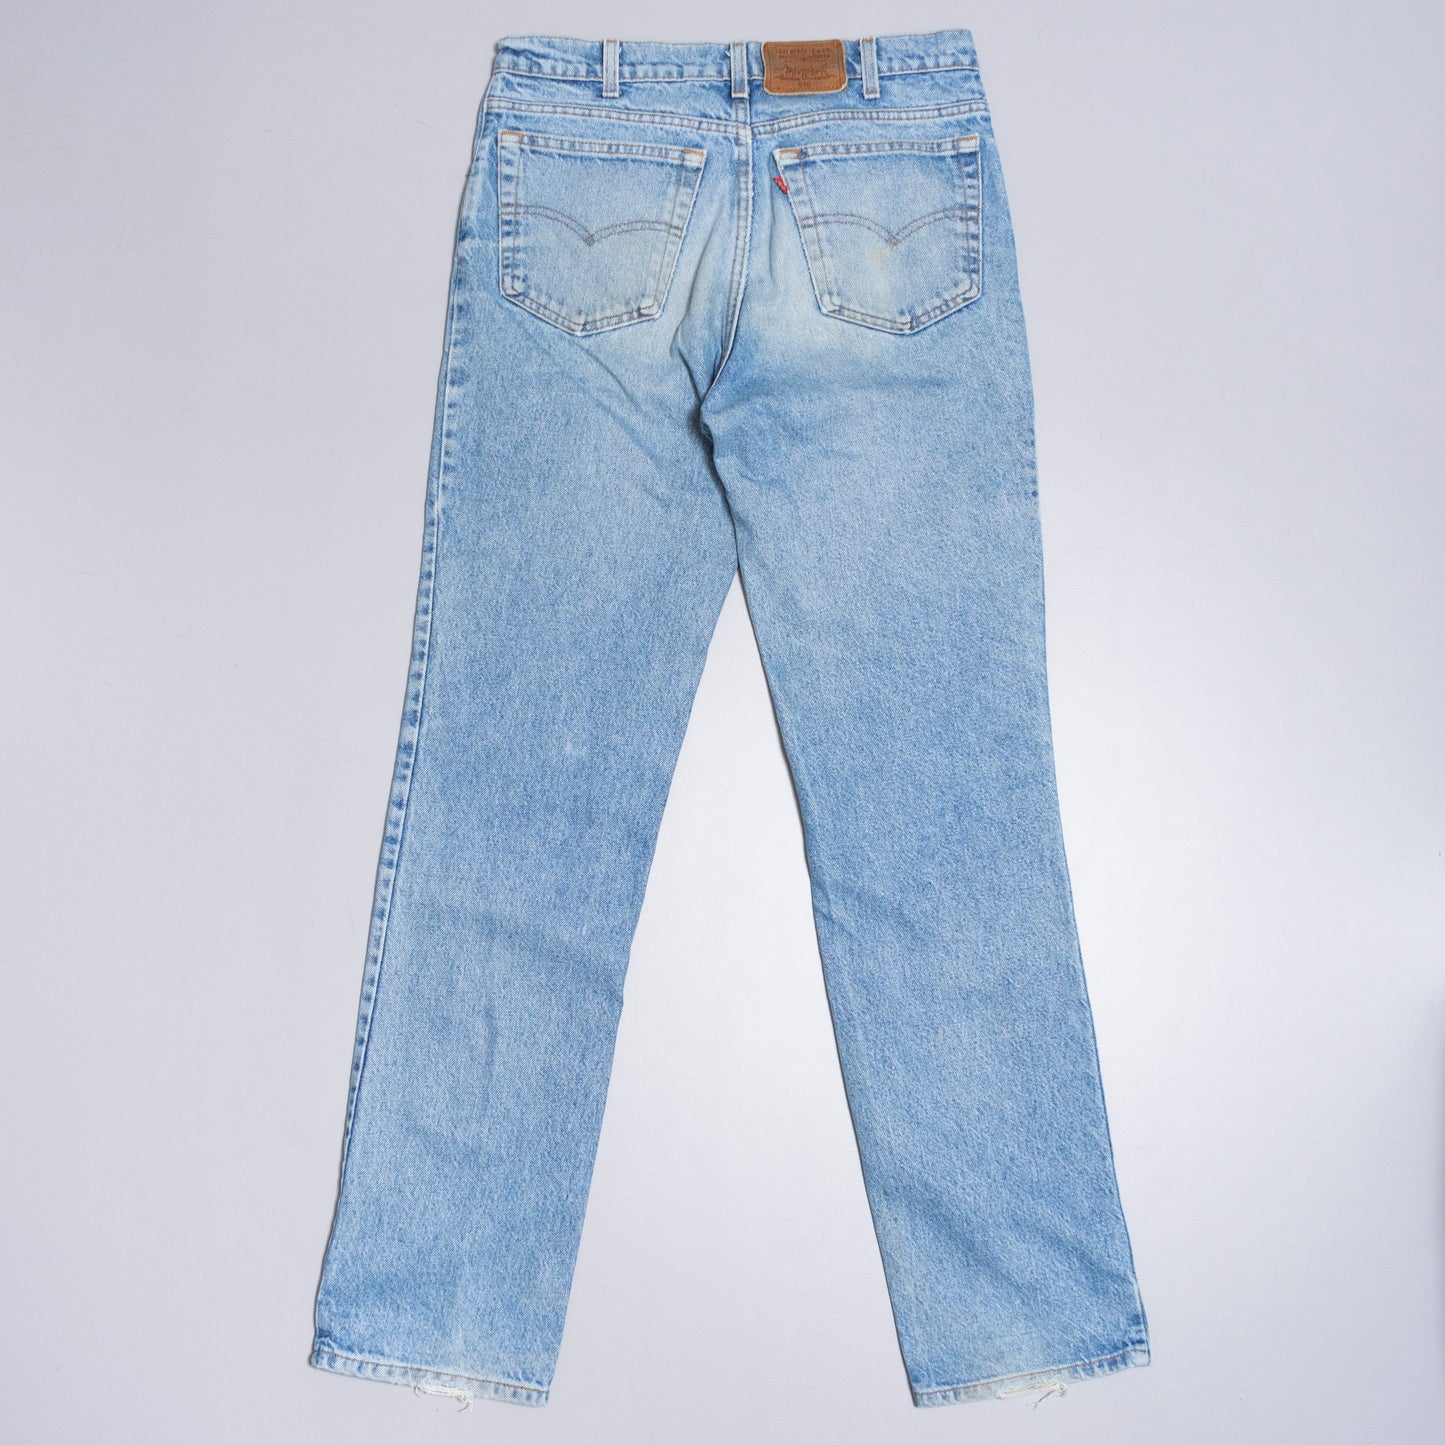 Levis 516 Jeans, 32/34